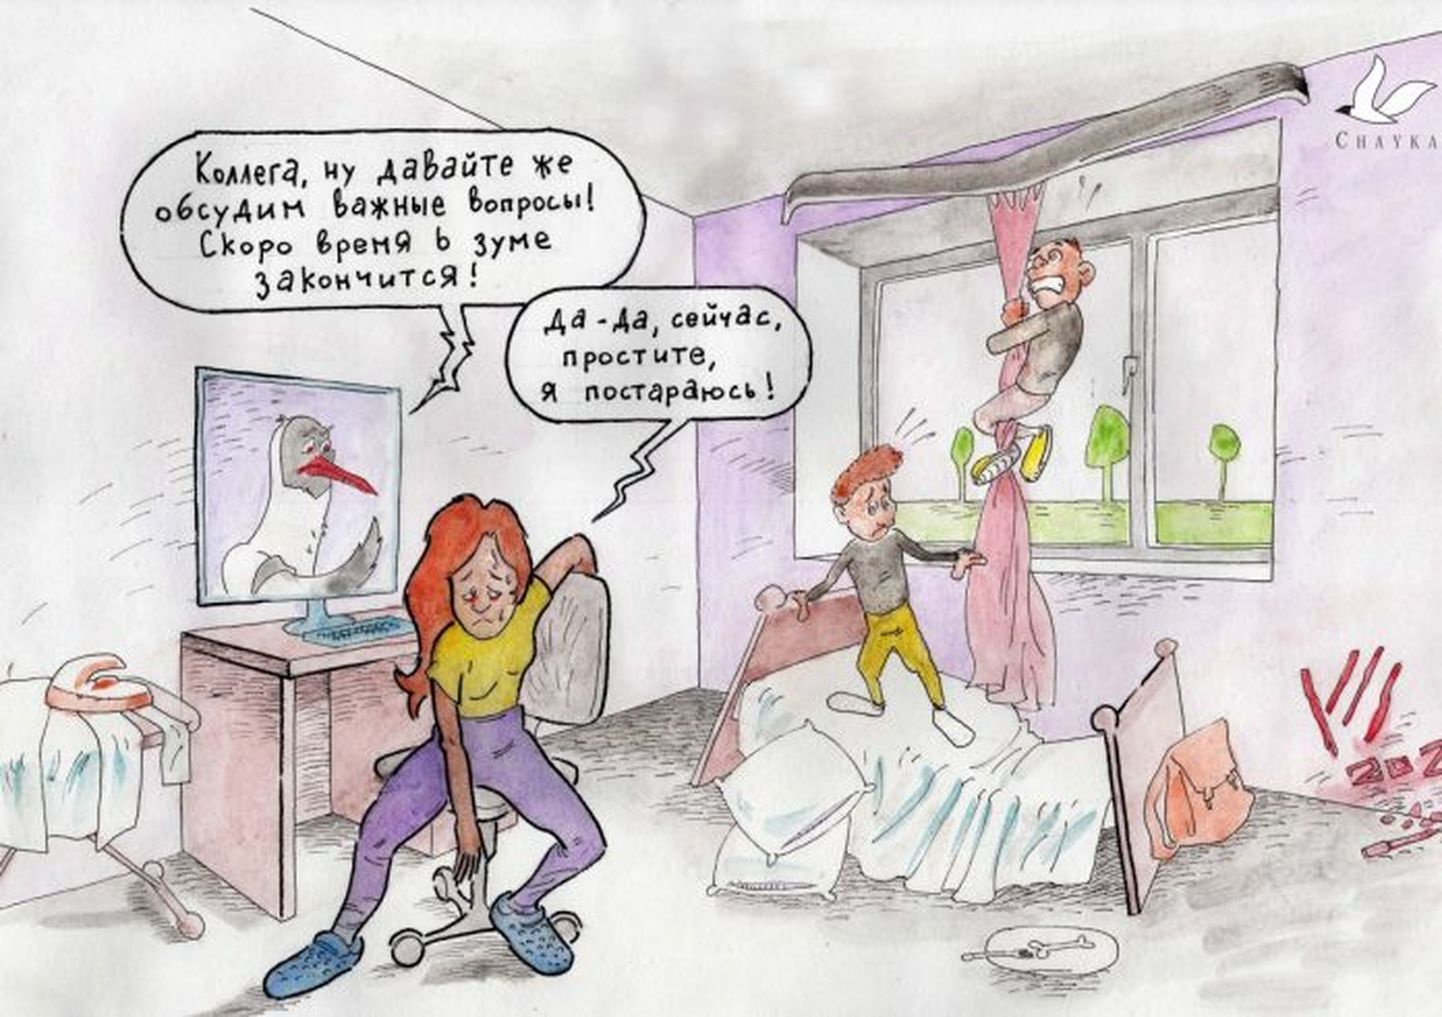 Во время локдауна журналист "Чайки" Алёна Долинда работает дома с двумя детьми. За прошлую неделю ее дочки сломали кровать и карниз, но карикатурист Эгонс Кивкуцанс, вероятно, не мог себе представить, что так себя ведут девочки 4-х и 6-ти лет, поэтому нарисовал мальчиков :)